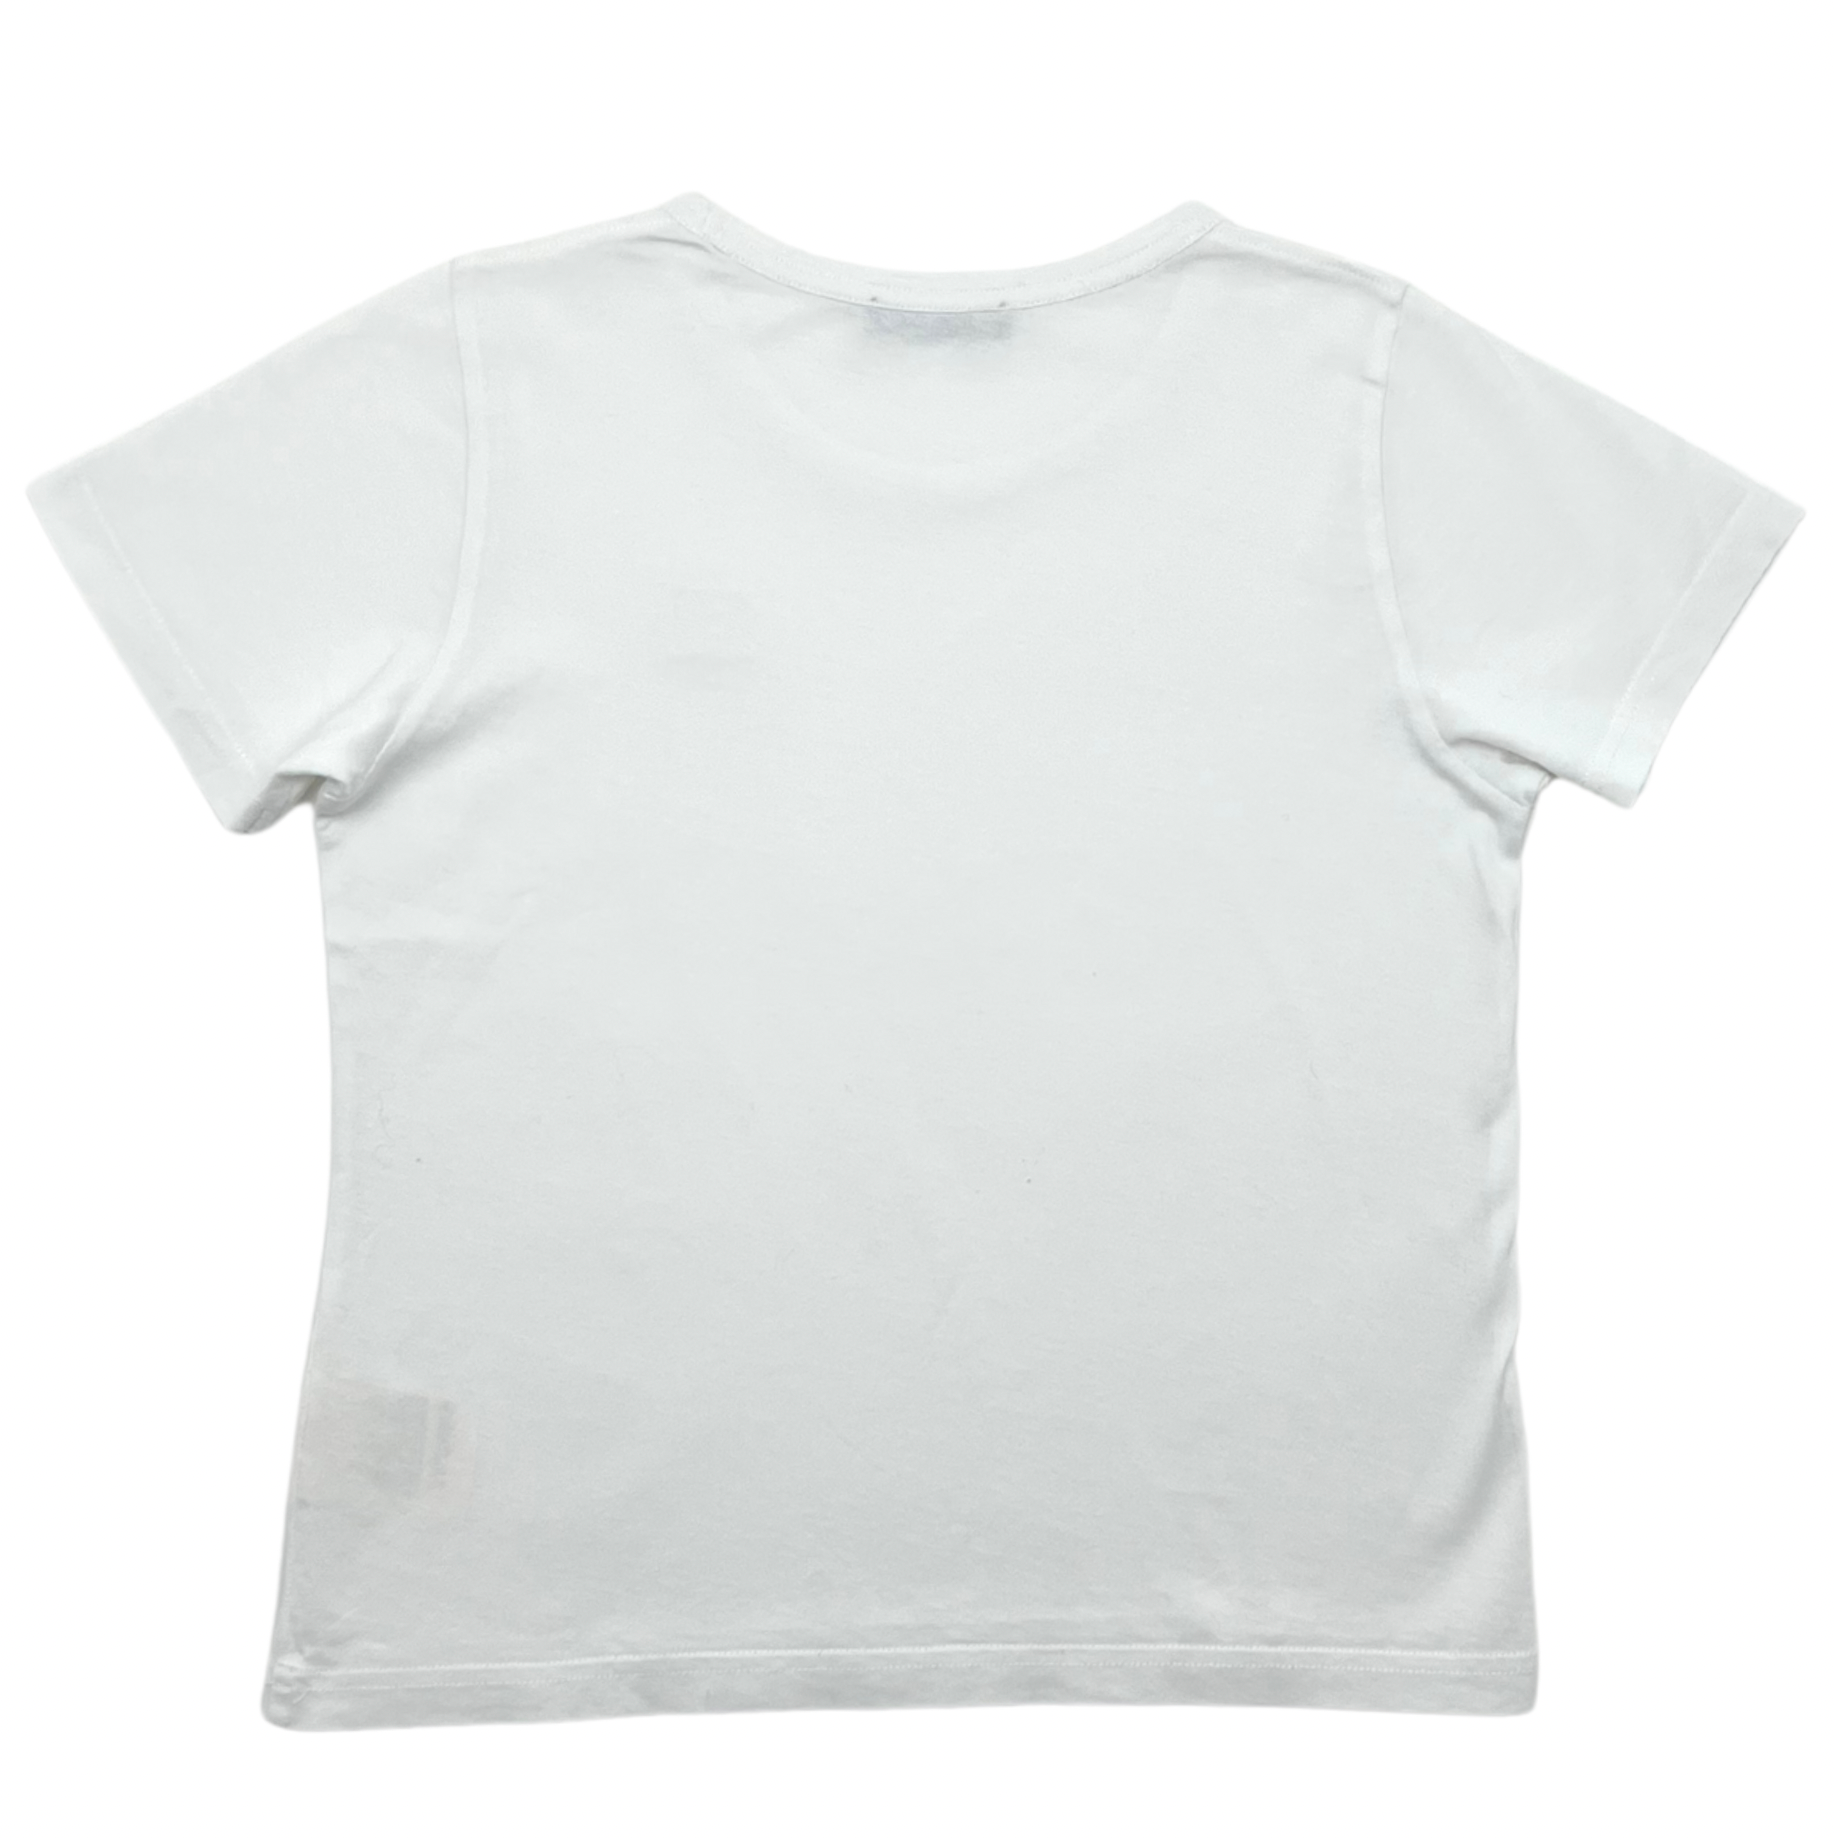 ACNE STUDIOS - White t-shirt - 8/10 years